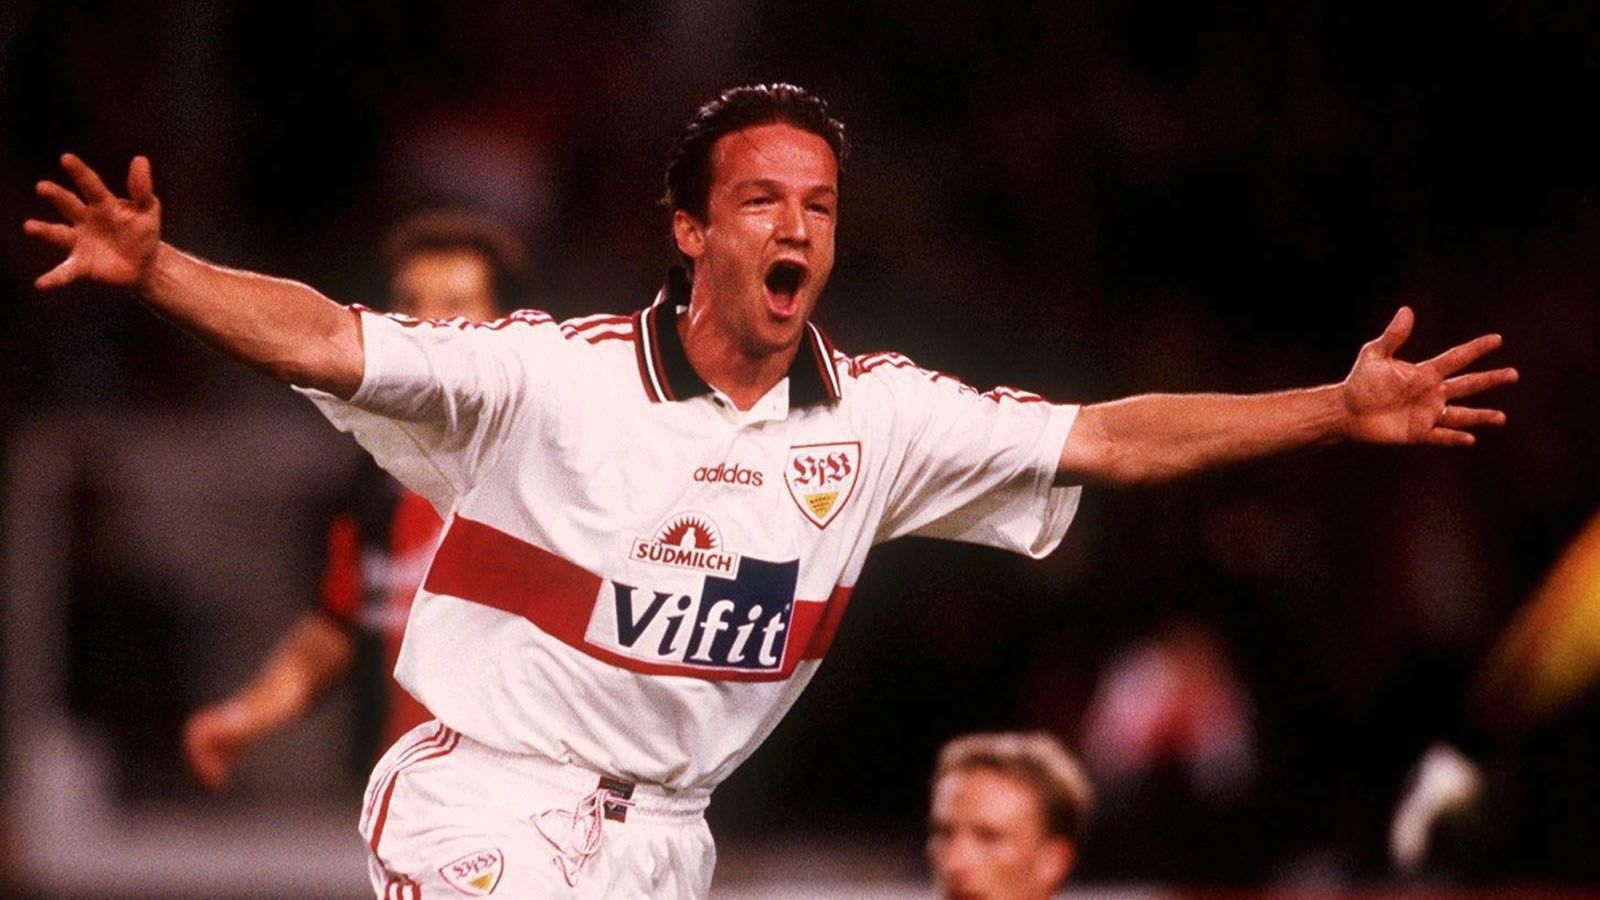 
                <strong>Saison 1995/96</strong><br>
                Torschützenkönig: Fredi Bobic (VfB Stuttgart) - 17 Tore
              